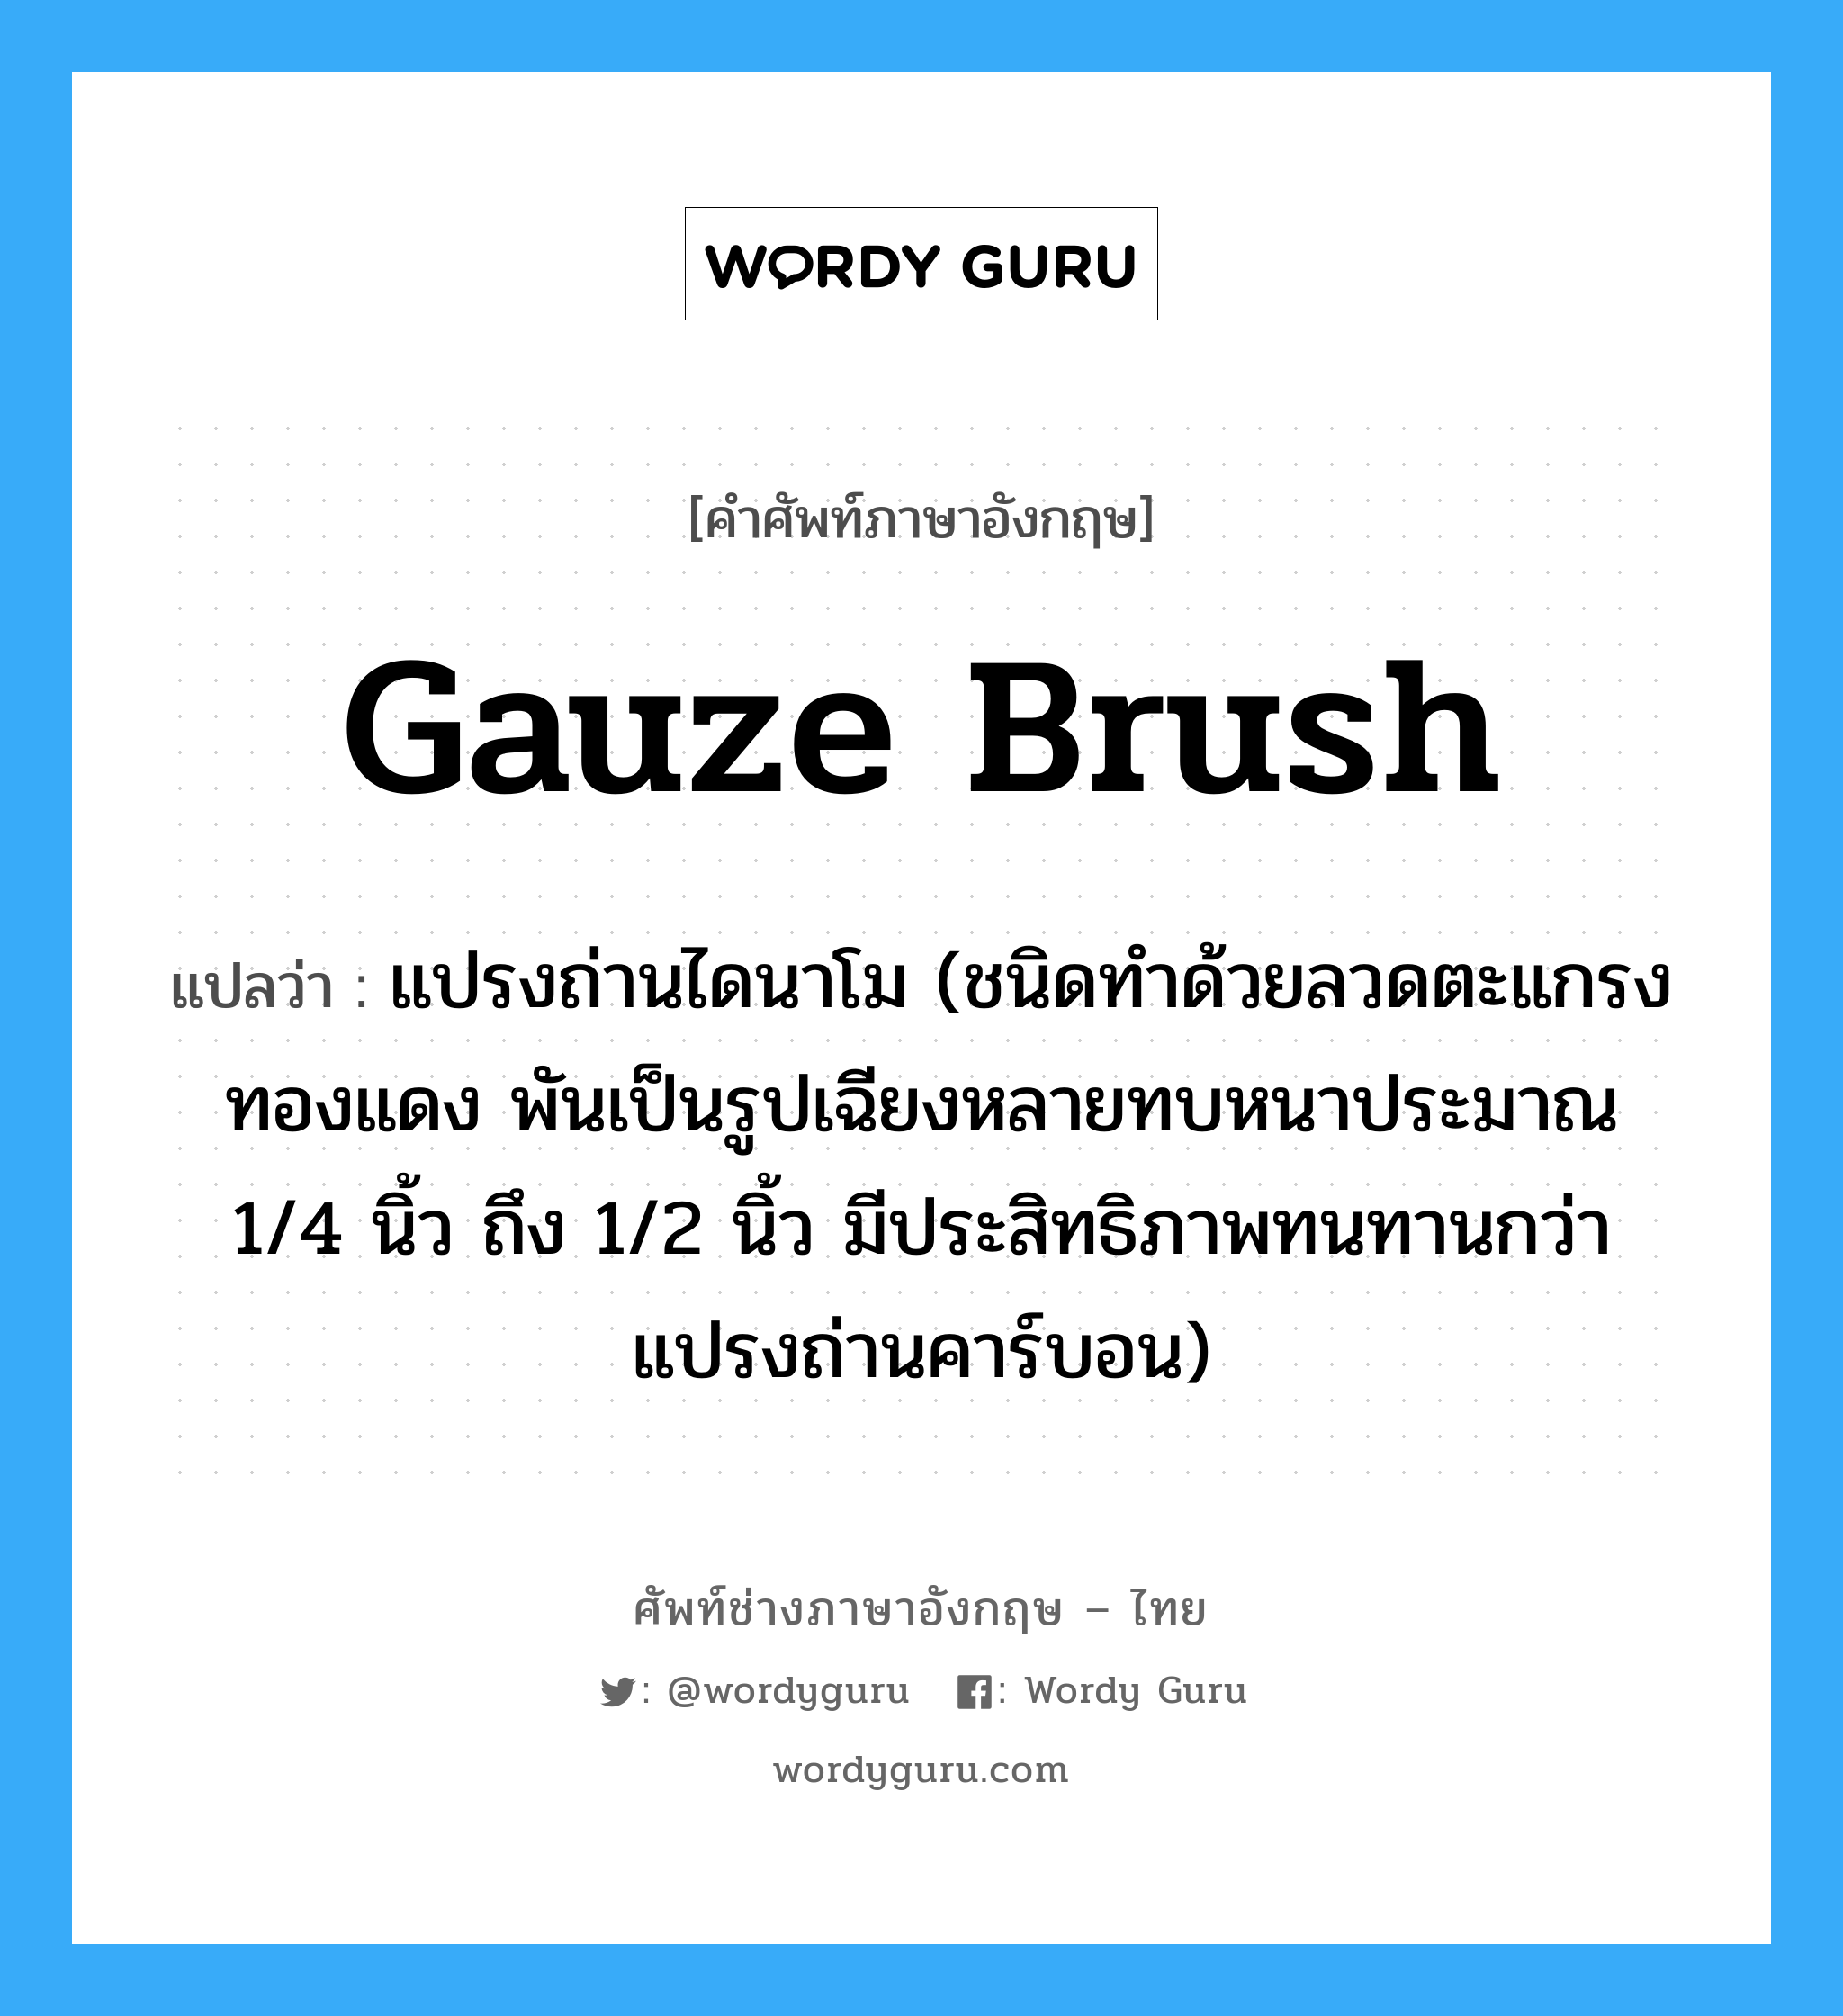 gauze brush แปลว่า?, คำศัพท์ช่างภาษาอังกฤษ - ไทย gauze brush คำศัพท์ภาษาอังกฤษ gauze brush แปลว่า แปรงถ่านไดนาโม (ชนิดทำด้วยลวดตะแกรงทองแดง พันเป็นรูปเฉียงหลายทบหนาประมาณ 1/4 นิ้ว ถึง 1/2 นิ้ว มีประสิทธิภาพทนทานกว่าแปรงถ่านคาร์บอน)